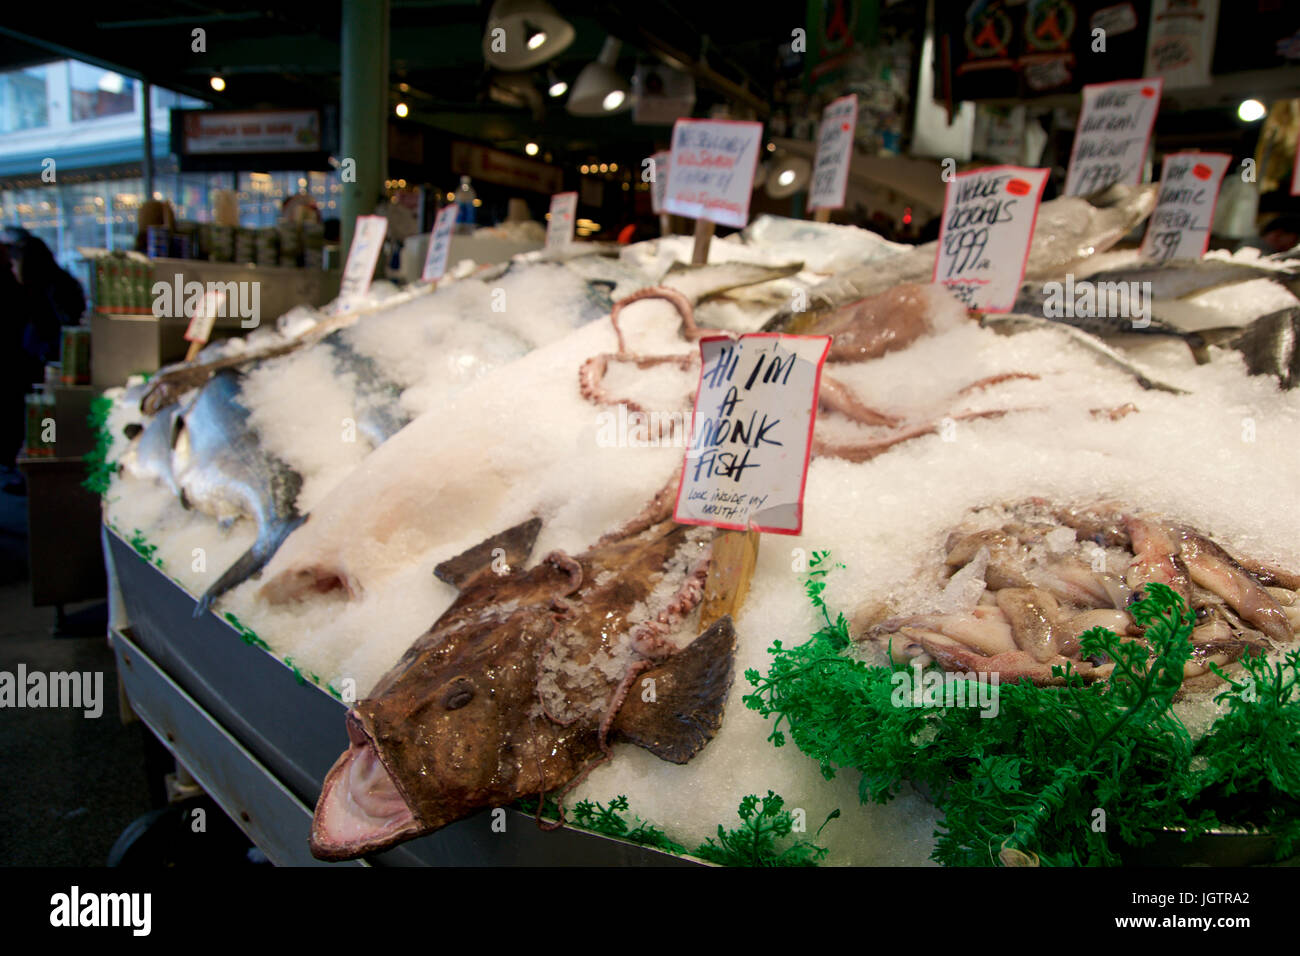 SEATTLE, WASHINGTON, USA - 24. Januar 2017: Kunden am Pike Place Fish Company warten auf Bestellung Fisch bei den berühmten Fischmarkt. Dieser Markt, eröffnet im Jahr 1930, ist bekannt für ihre Open-Air Fisch Markt Stil. Stockfoto